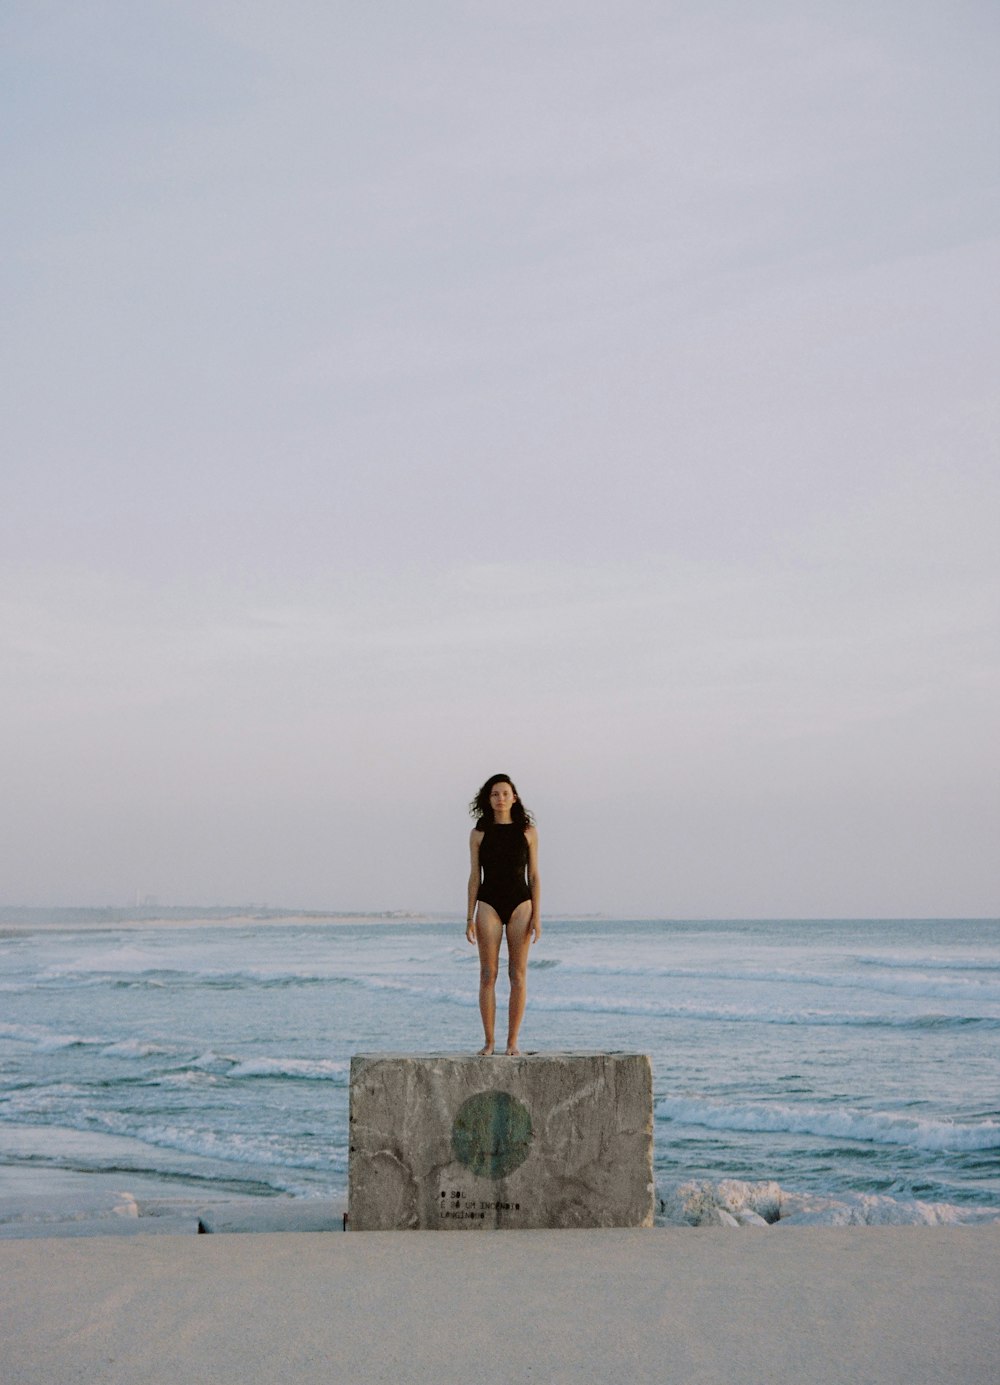 바다 근처의 돌 블록 위에 서 있는 여자